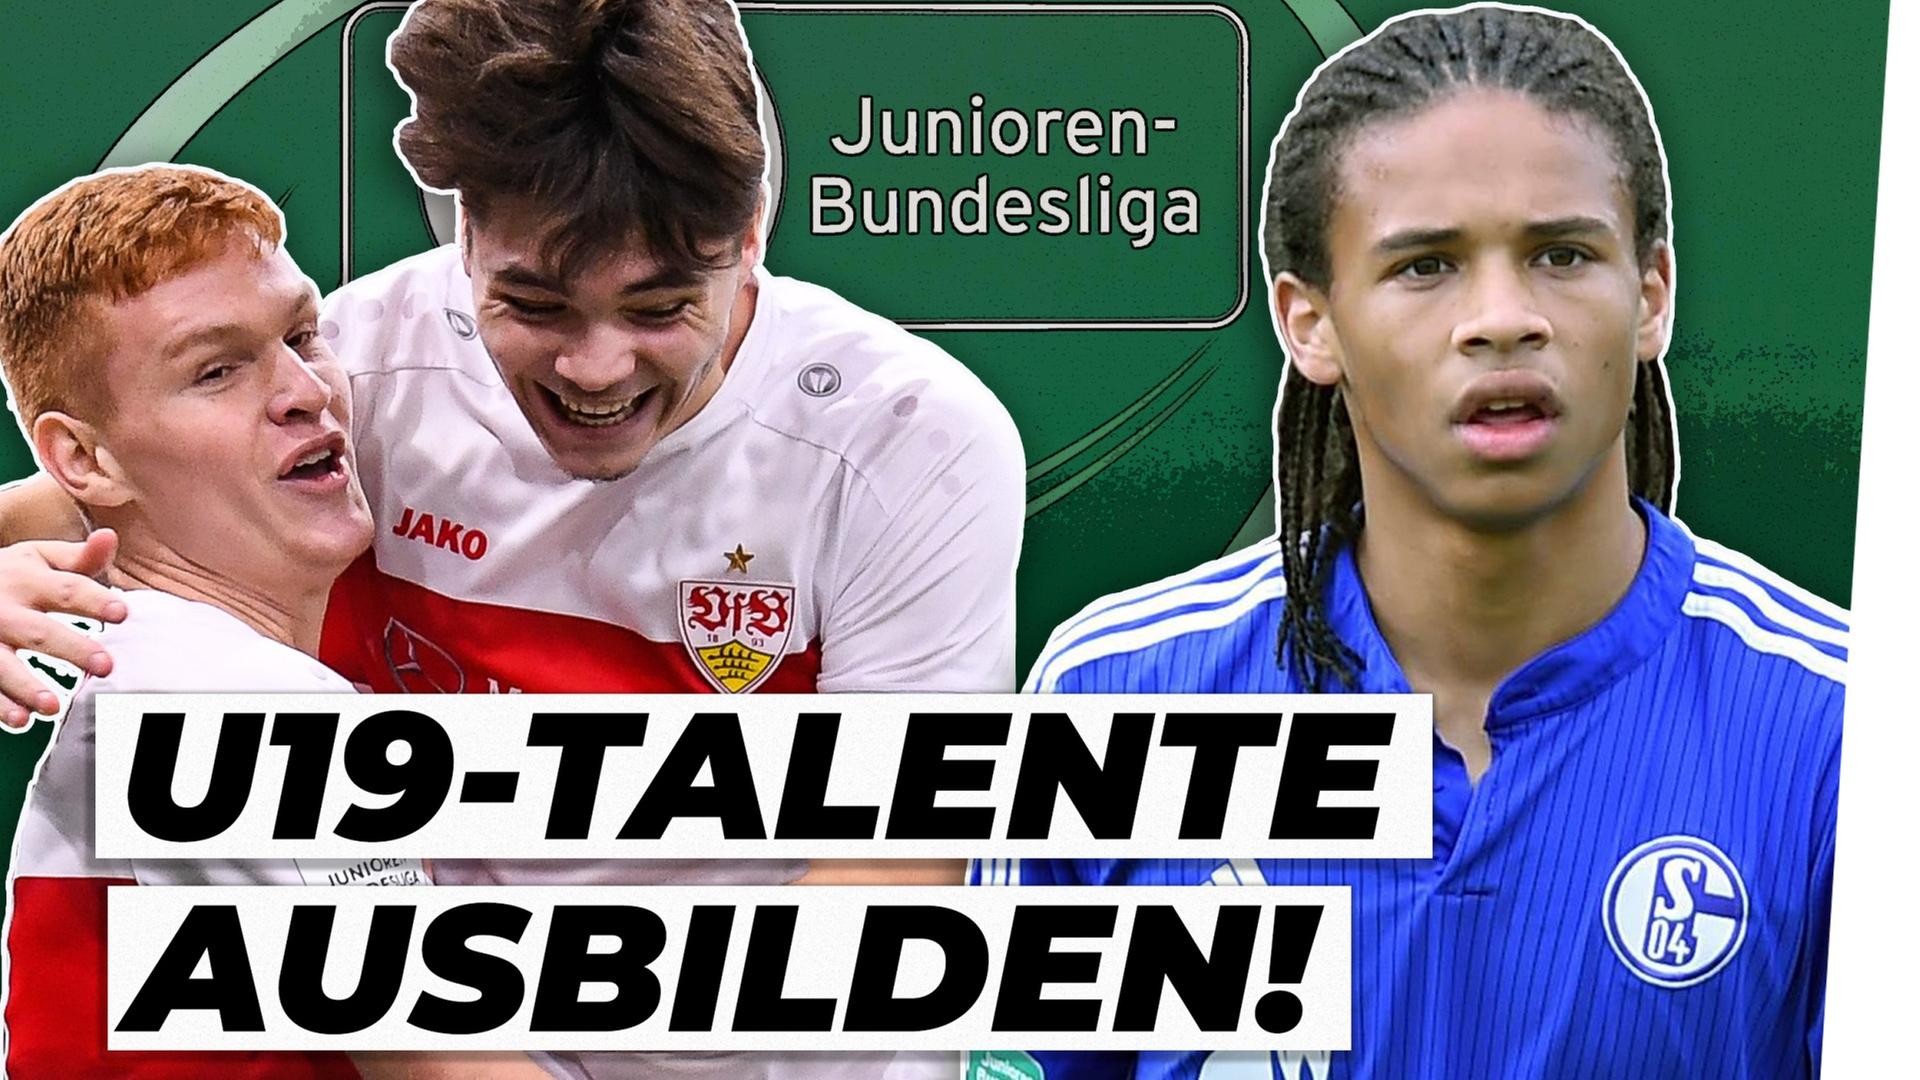 U19: Für Talente ein zu harter Weg in die Bundesliga?! - Analyse